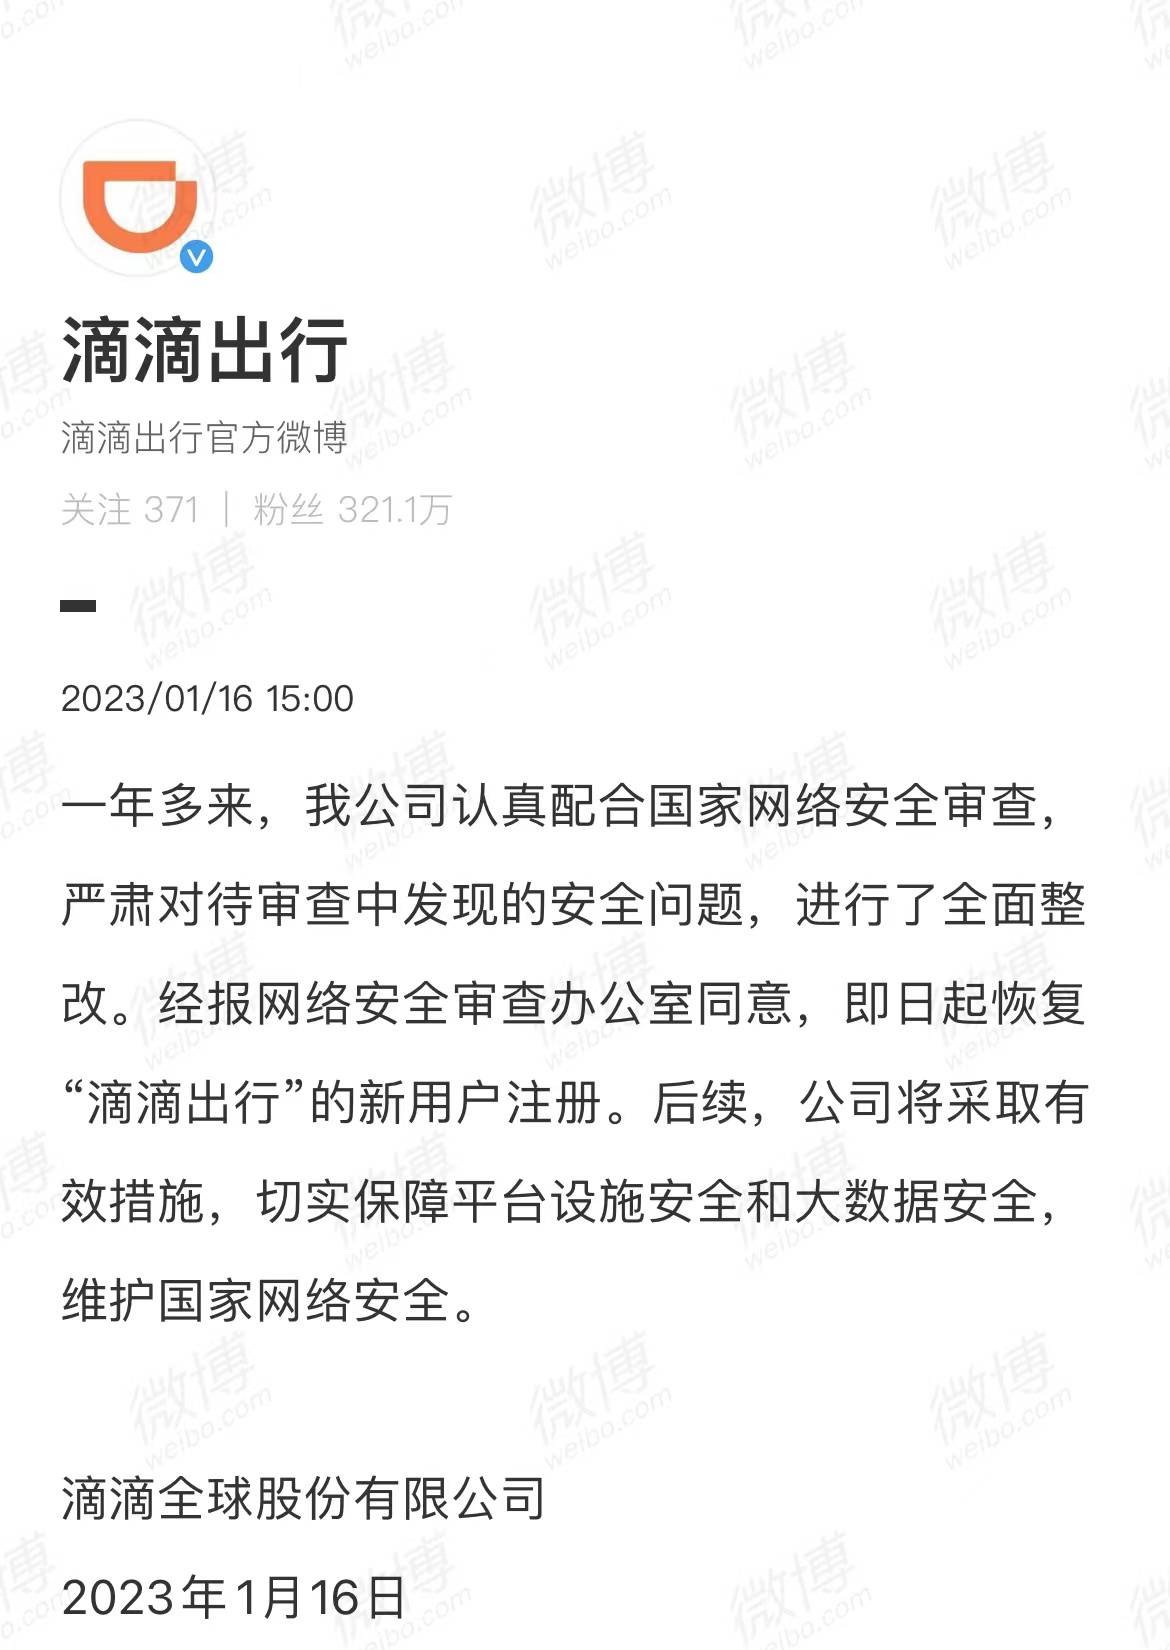 2 27 - Didi Chuxing riprende la registrazione di nuovi utenti / Apple potrebbe rilasciare nuovi prodotti questa settimana / iQiyi risponde al divieto di riproduzione della connessione HDMI